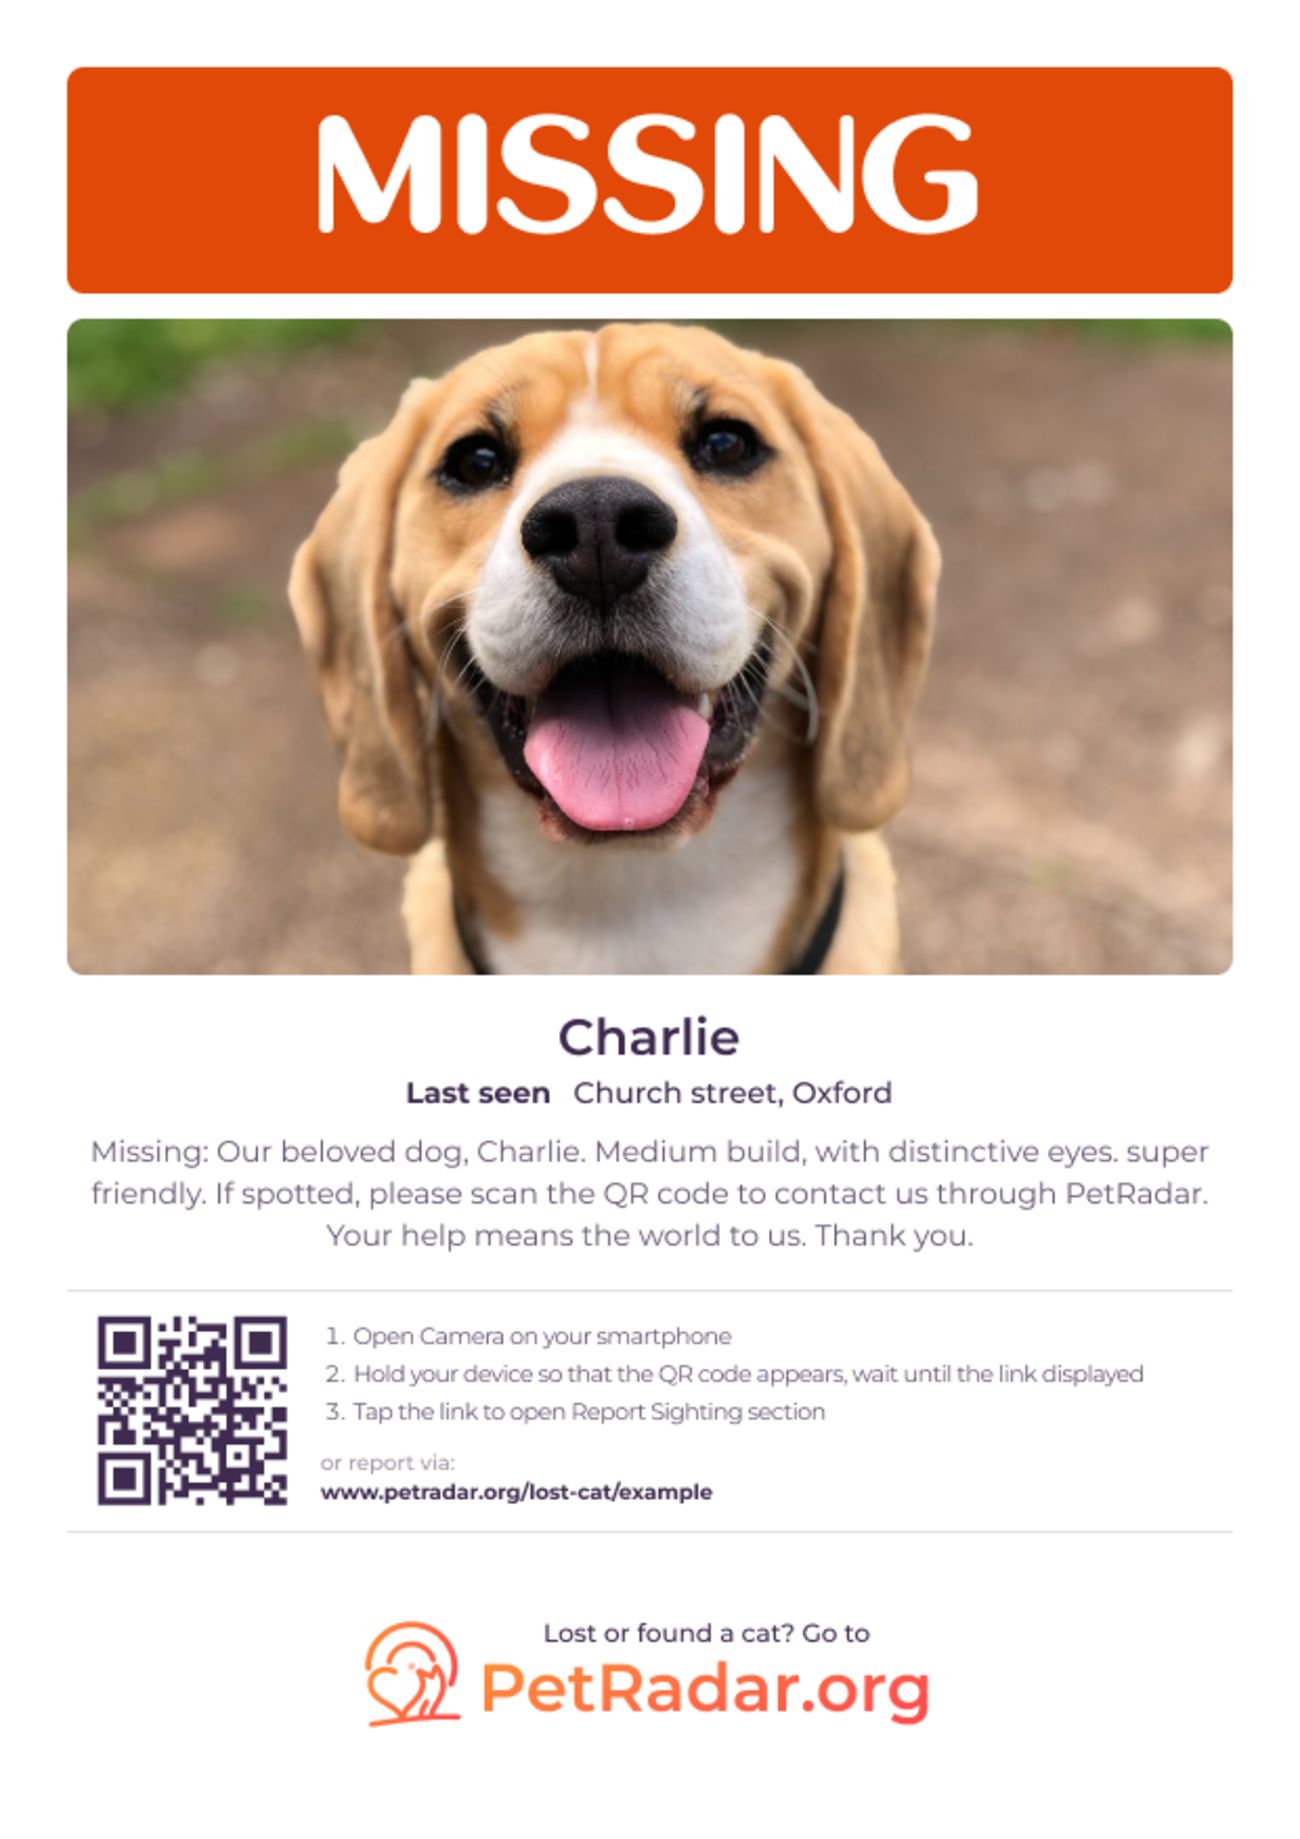 Das kostenlose, herunterladbare und druckbare 'Vermisster Hund' Plakat von PetRadar